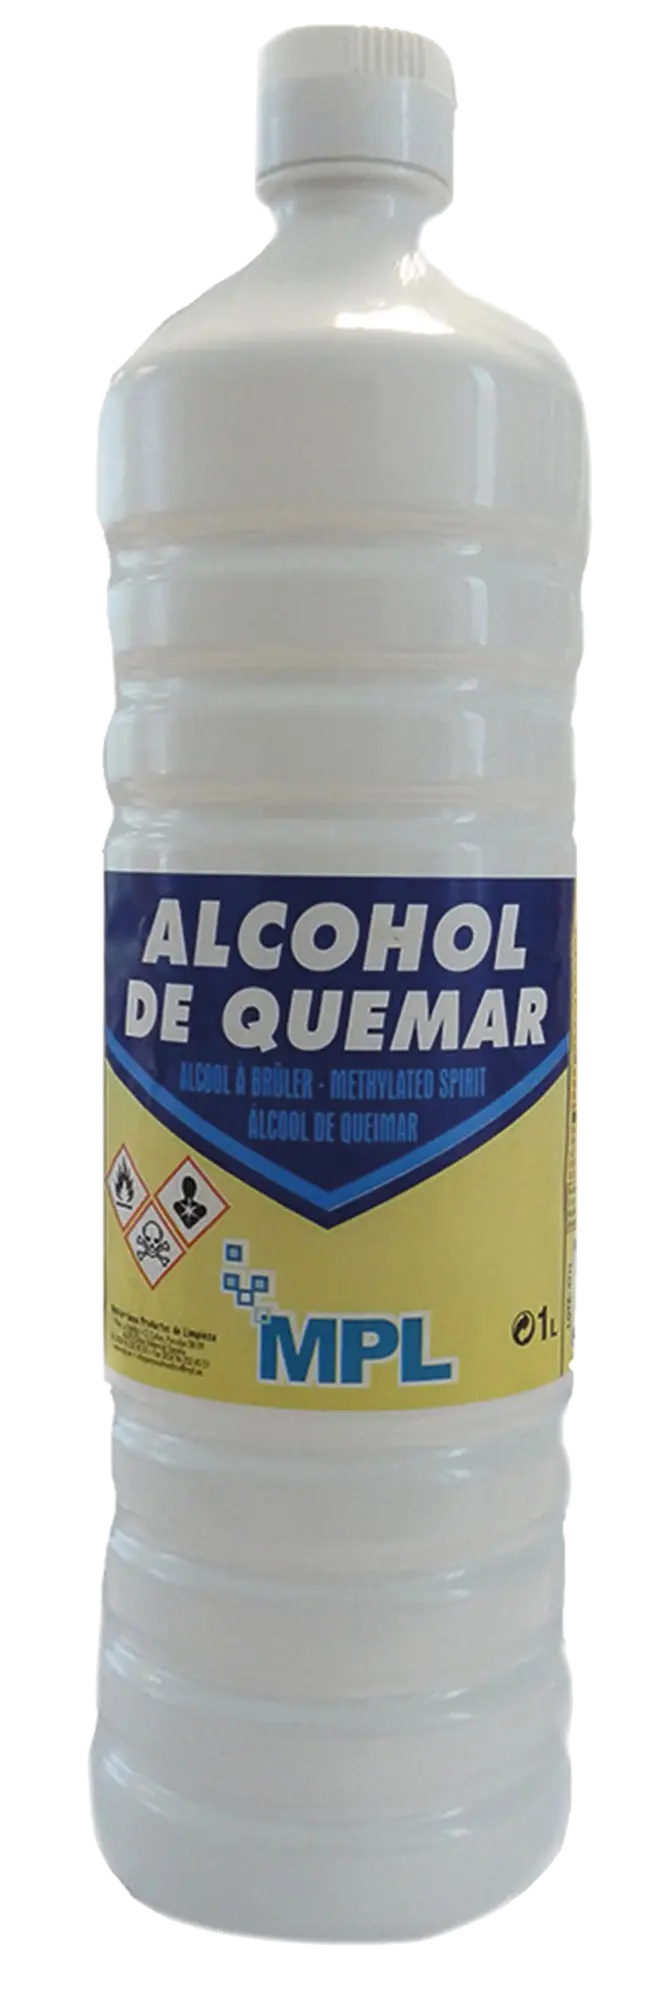 ALCOHOL DE QUEMAR, 1 L.